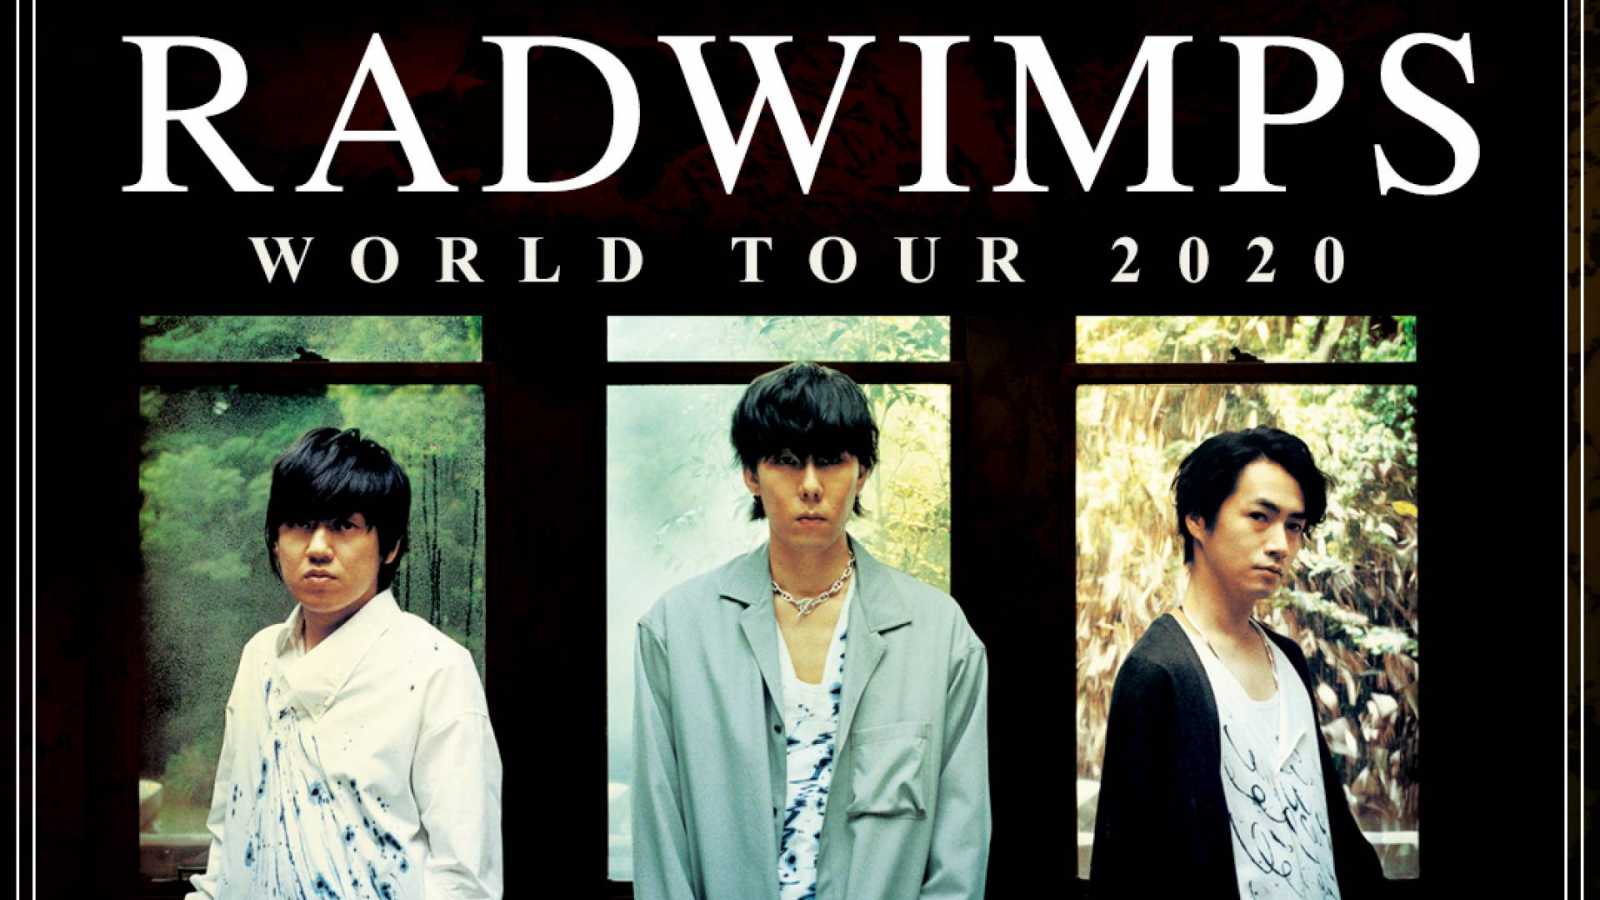 RADWIMPS annonce une tournée mondiale © UNIVERSAL MUSIC JAPAN